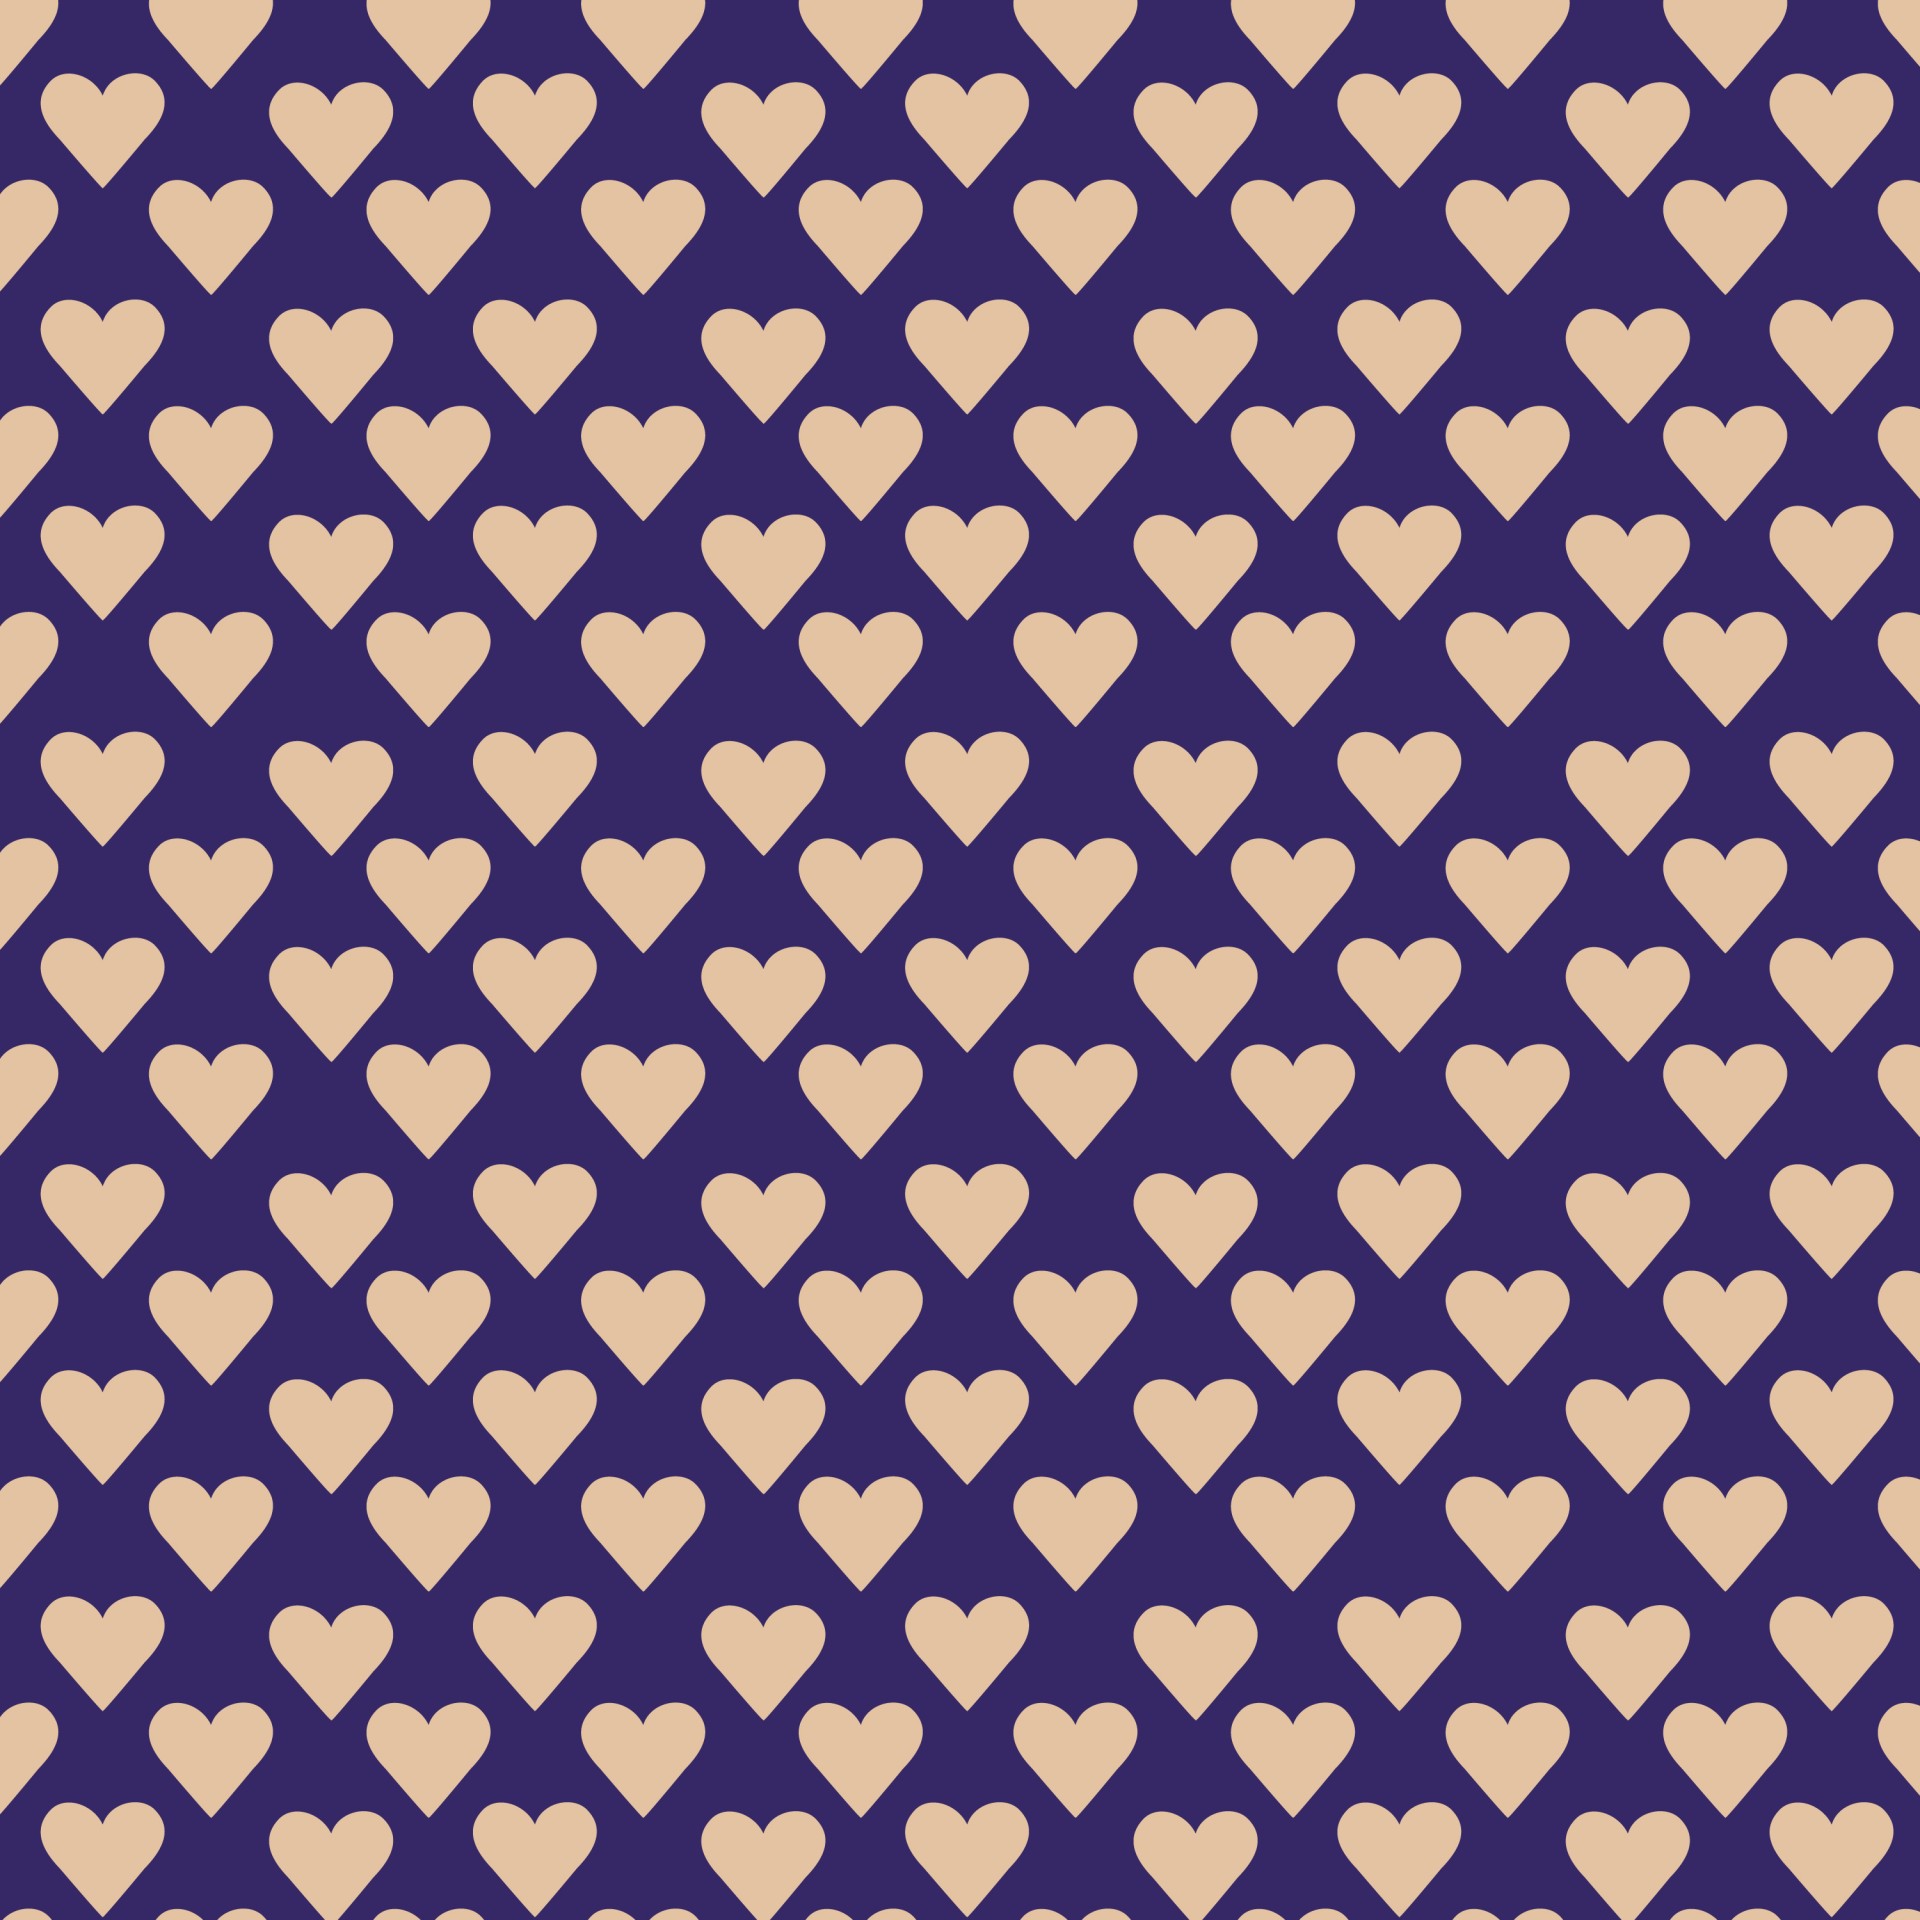 hearts seamless pattern pattern free photo